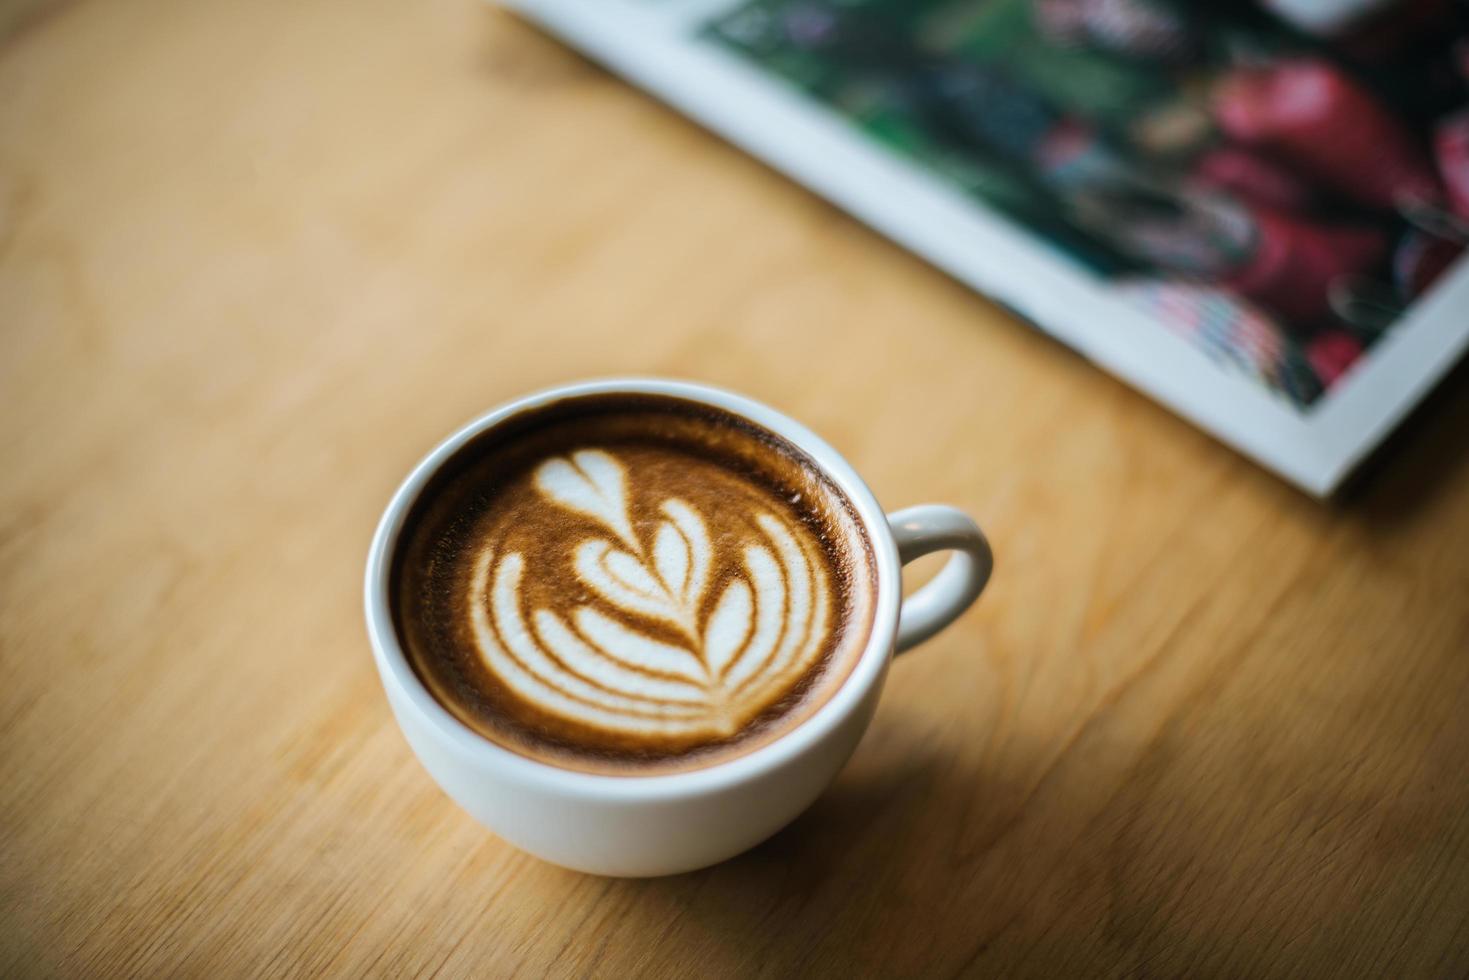 latte art em xícara de café na mesa do café foto